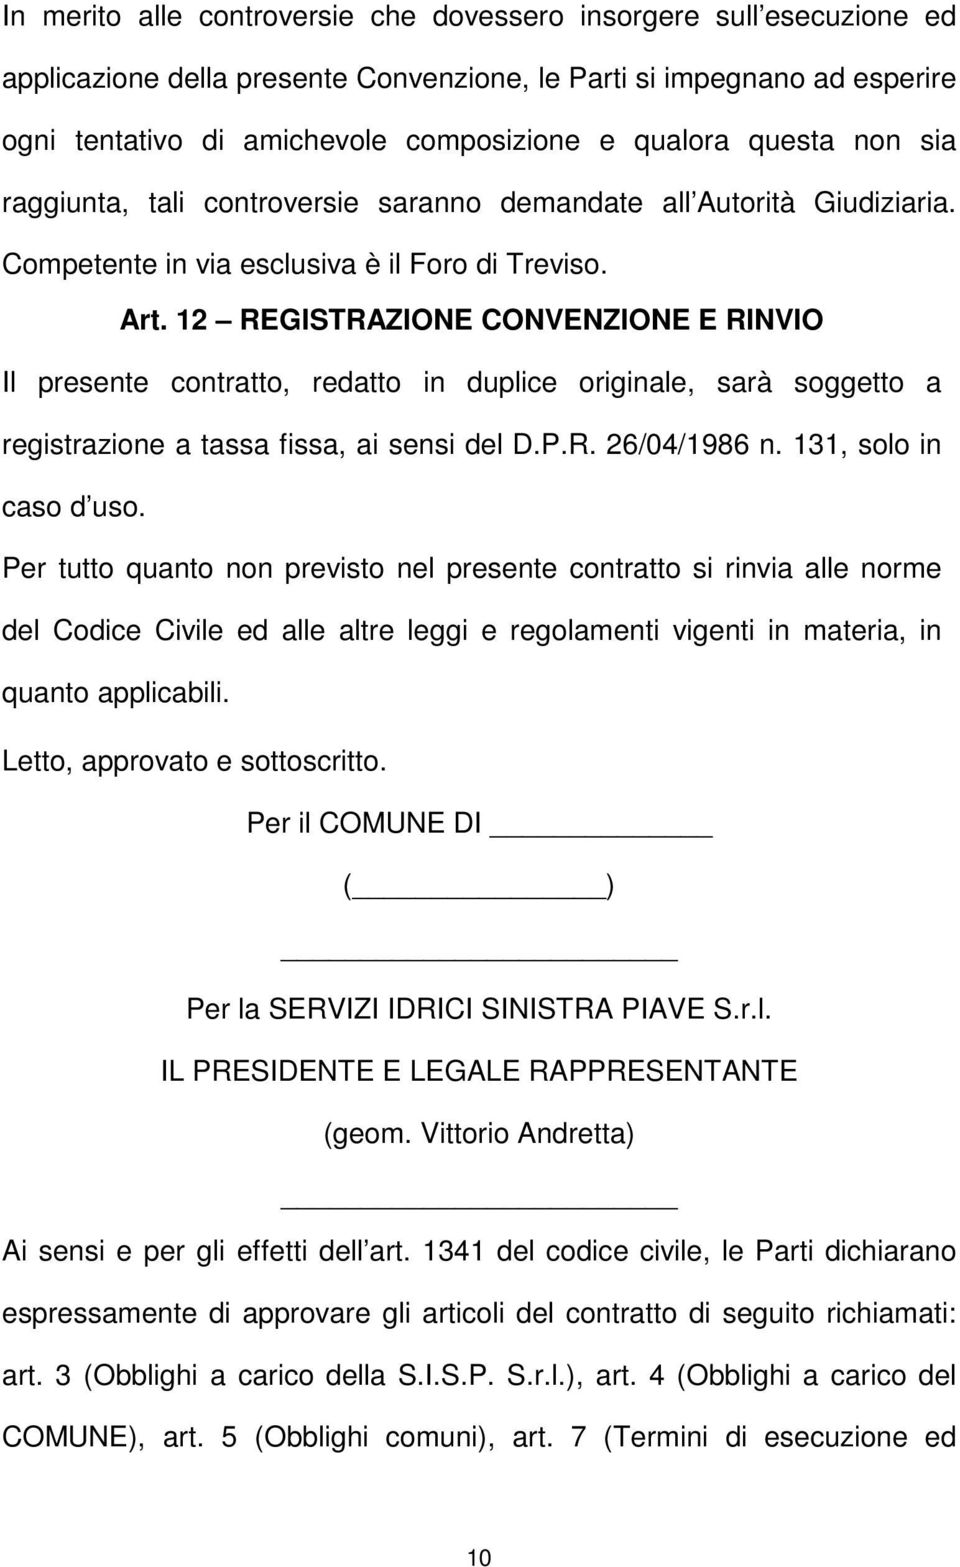 12 REGISTRAZIONE CONVENZIONE E RINVIO Il presente contratto, redatto in duplice originale, sarà soggetto a registrazione a tassa fissa, ai sensi del D.P.R. 26/04/1986 n. 131, solo in caso d uso.